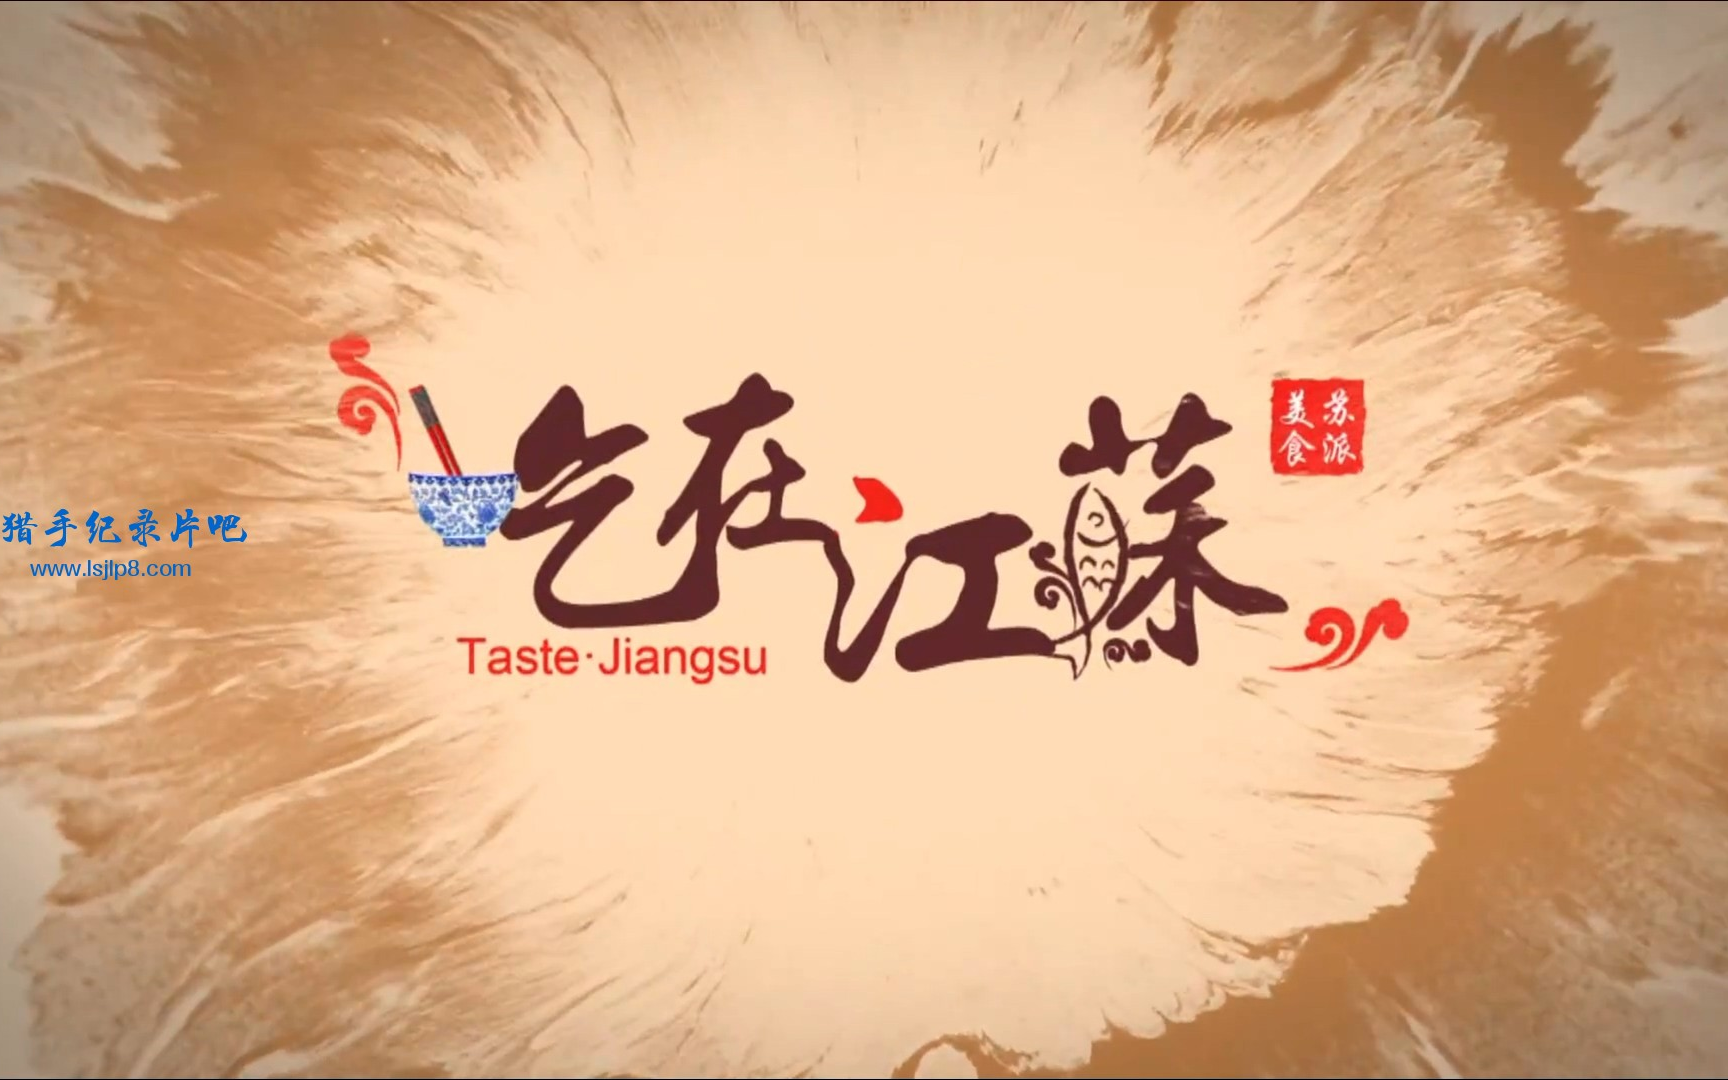 美食纪录片《吃在江苏》全8集  1080P超清